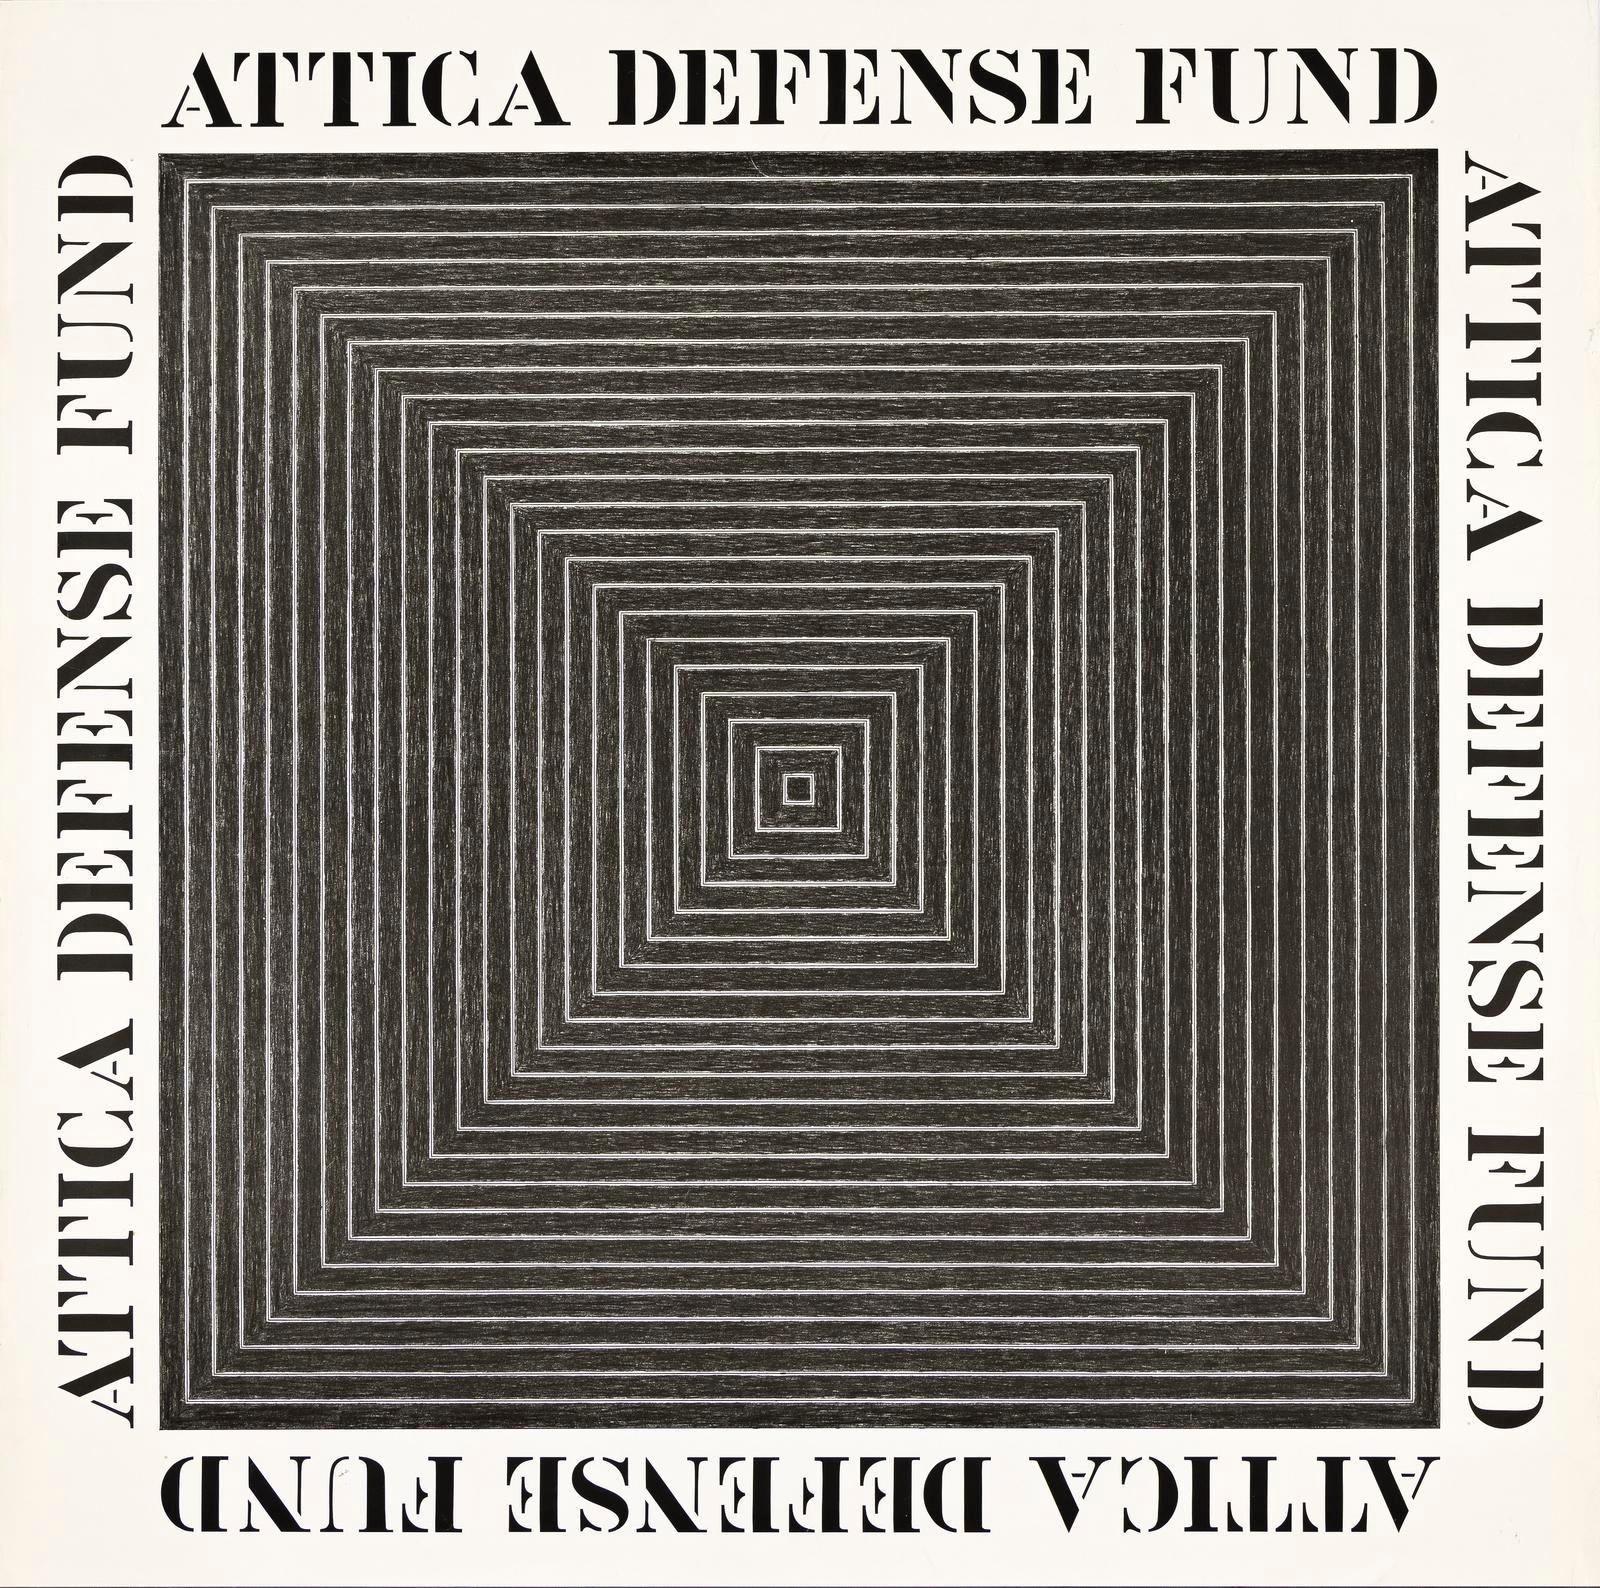 Attica Defense Fund, historisches Plakat aus den 1970er Jahren in limitierter Auflage auf lithografischem Papier